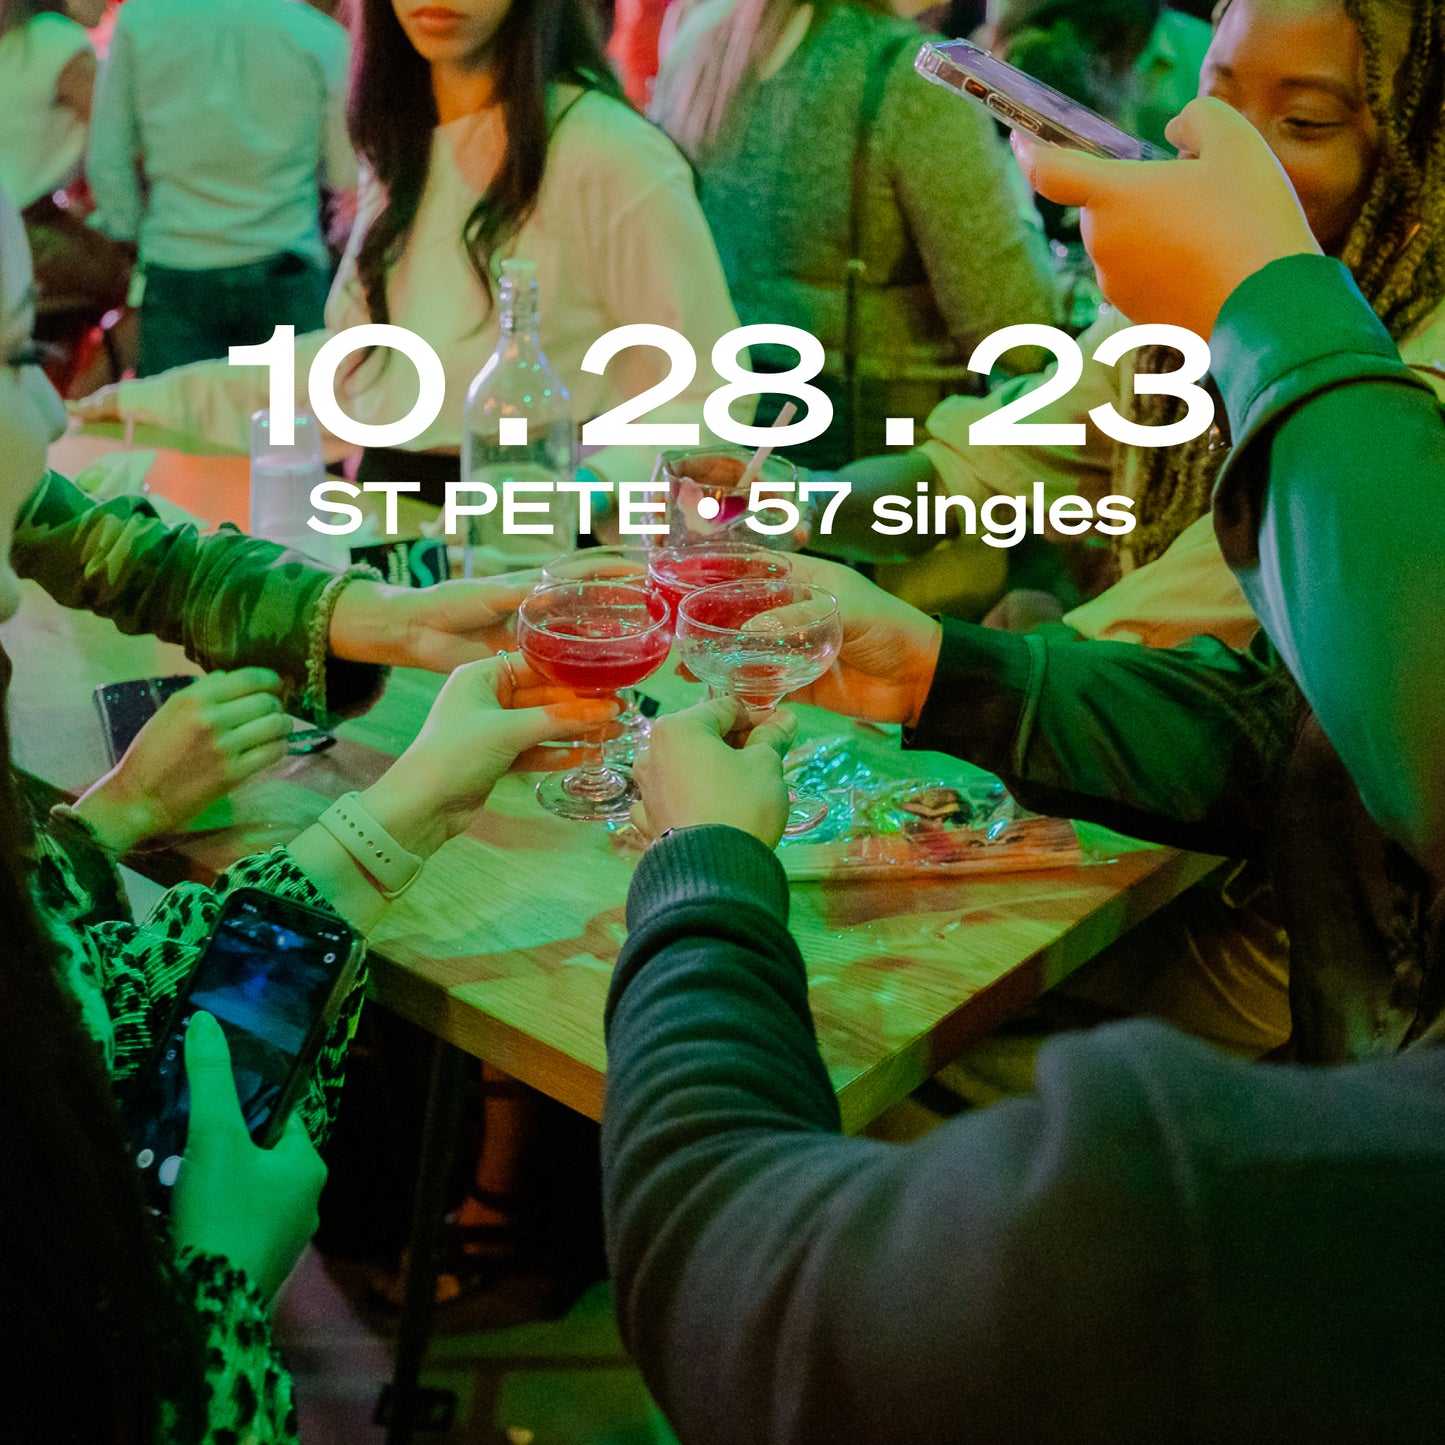 St Petersburg: Singles Happy Hour